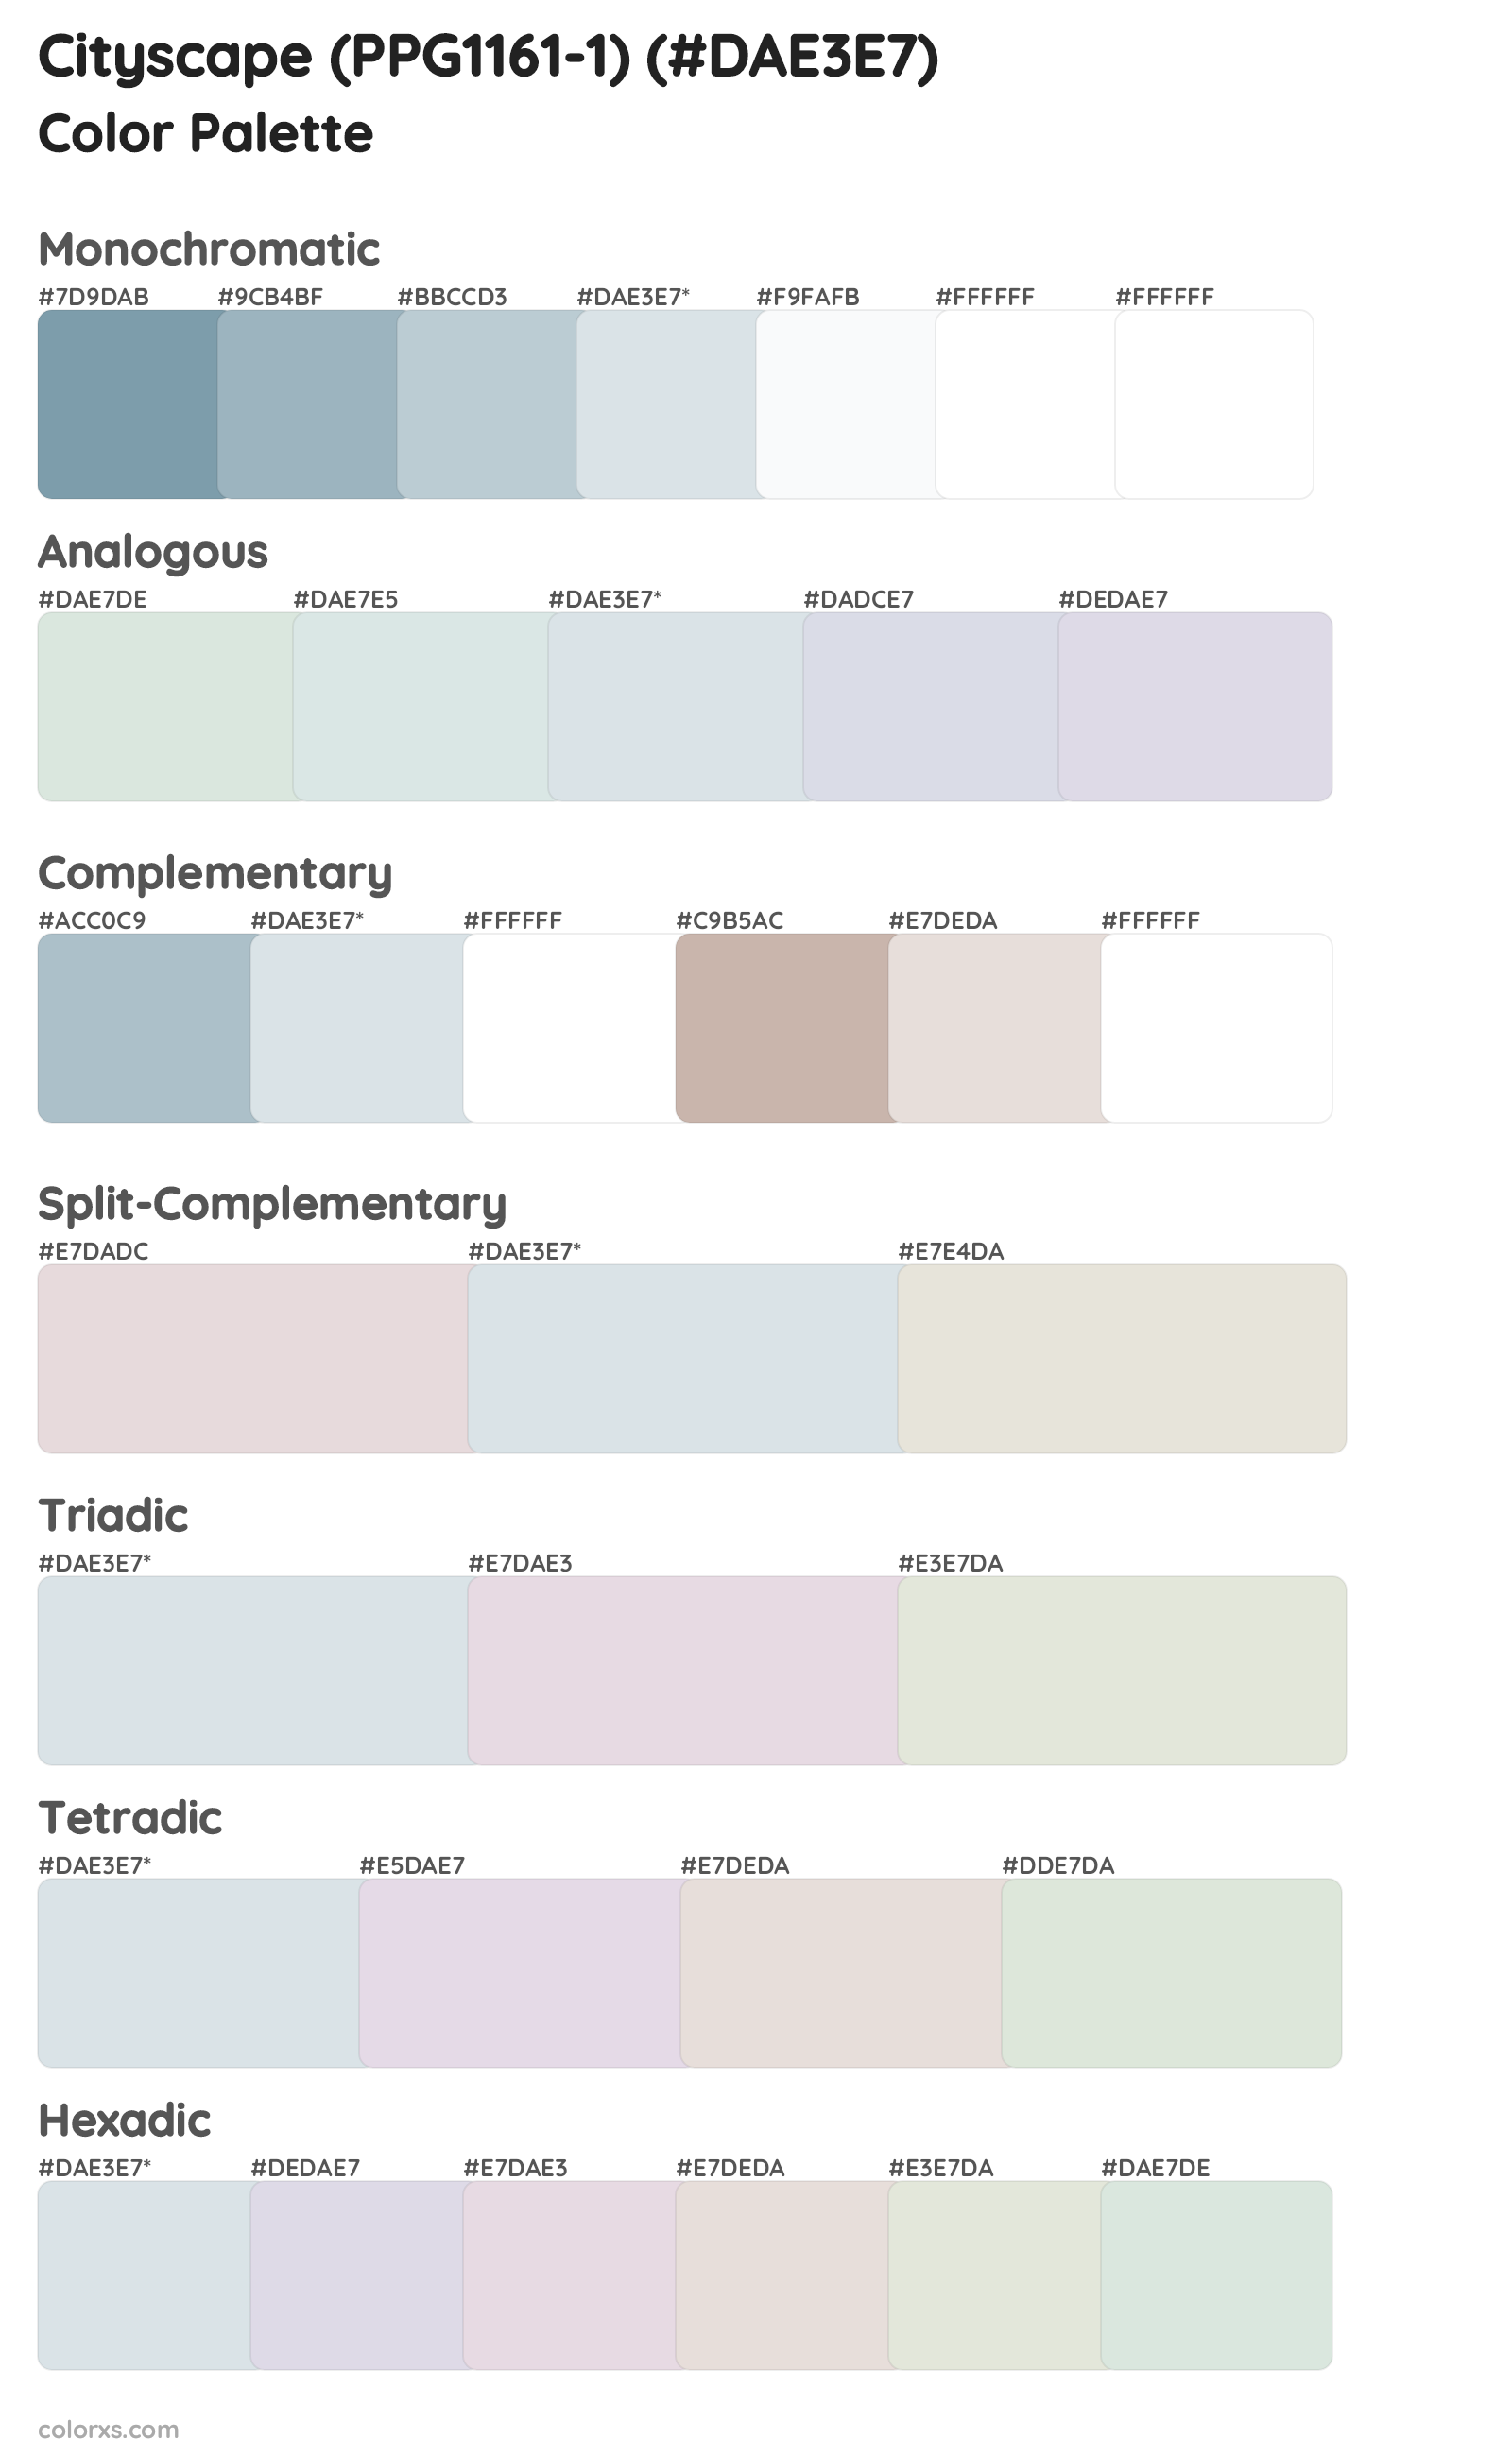 Cityscape (PPG1161-1) Color Scheme Palettes